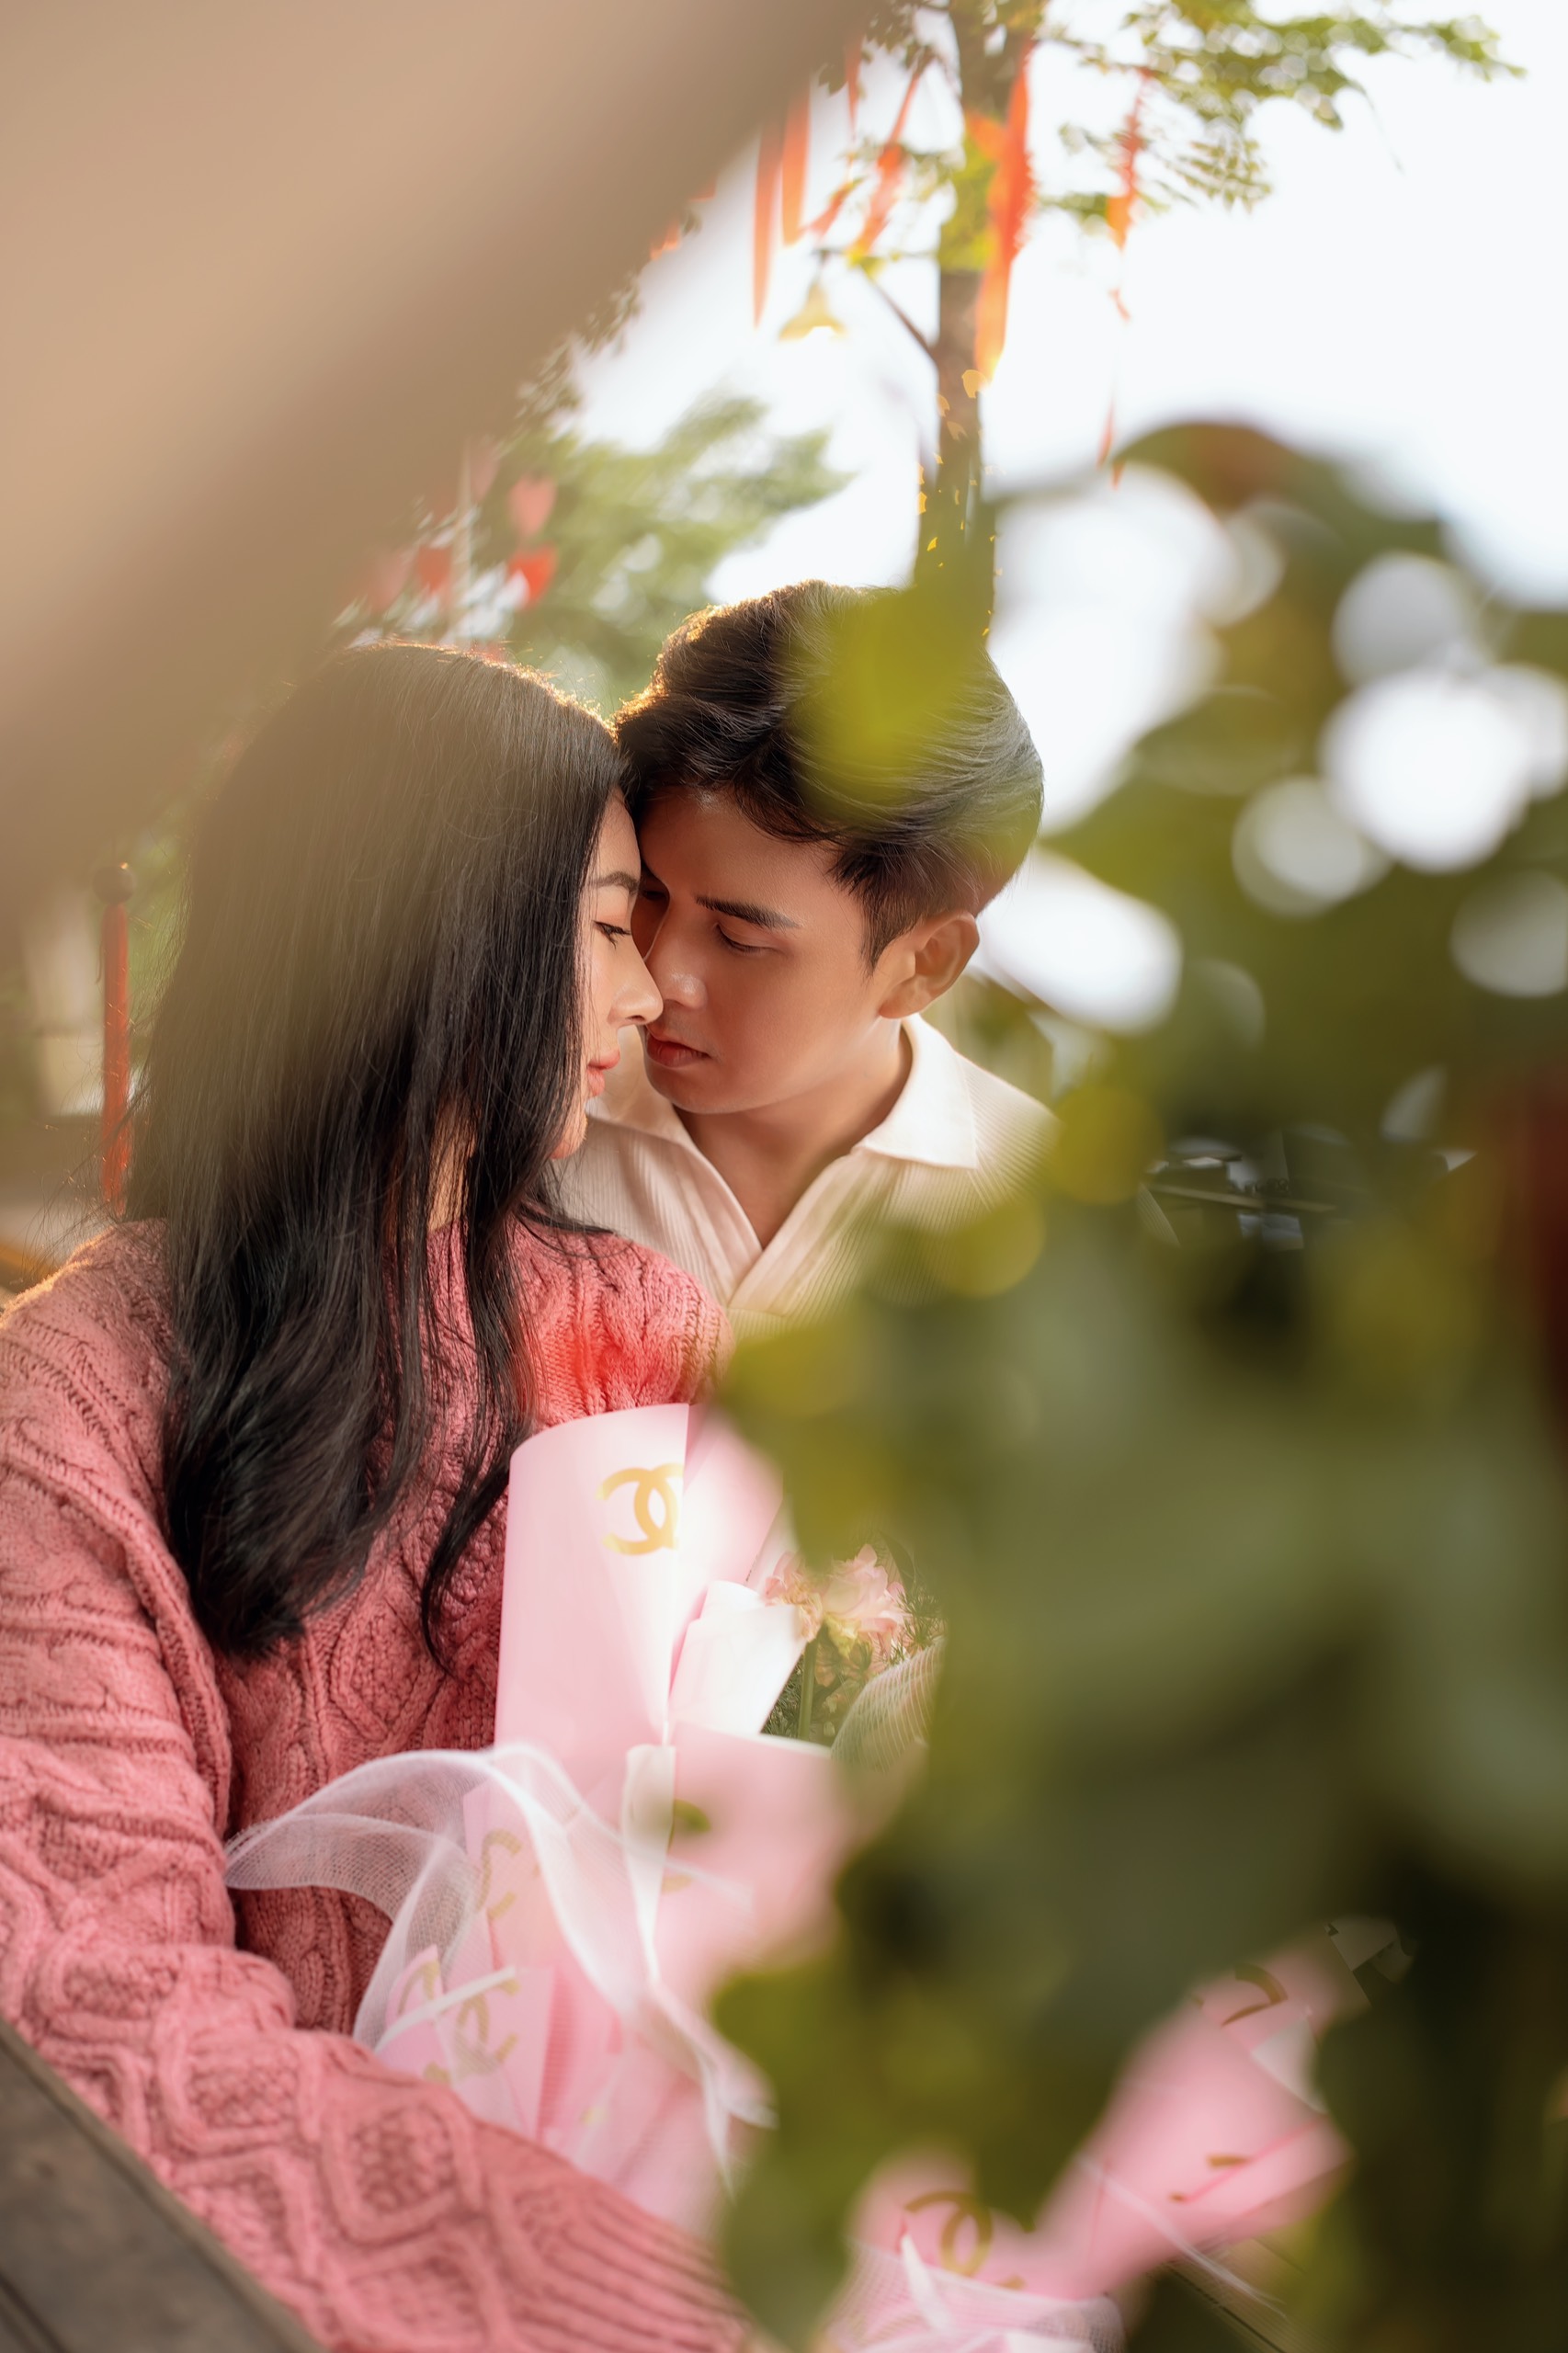 Hồ Quang Hiếu hưởng tuần trăng mật với vợ sắp cưới kém 17 tuổi - 4